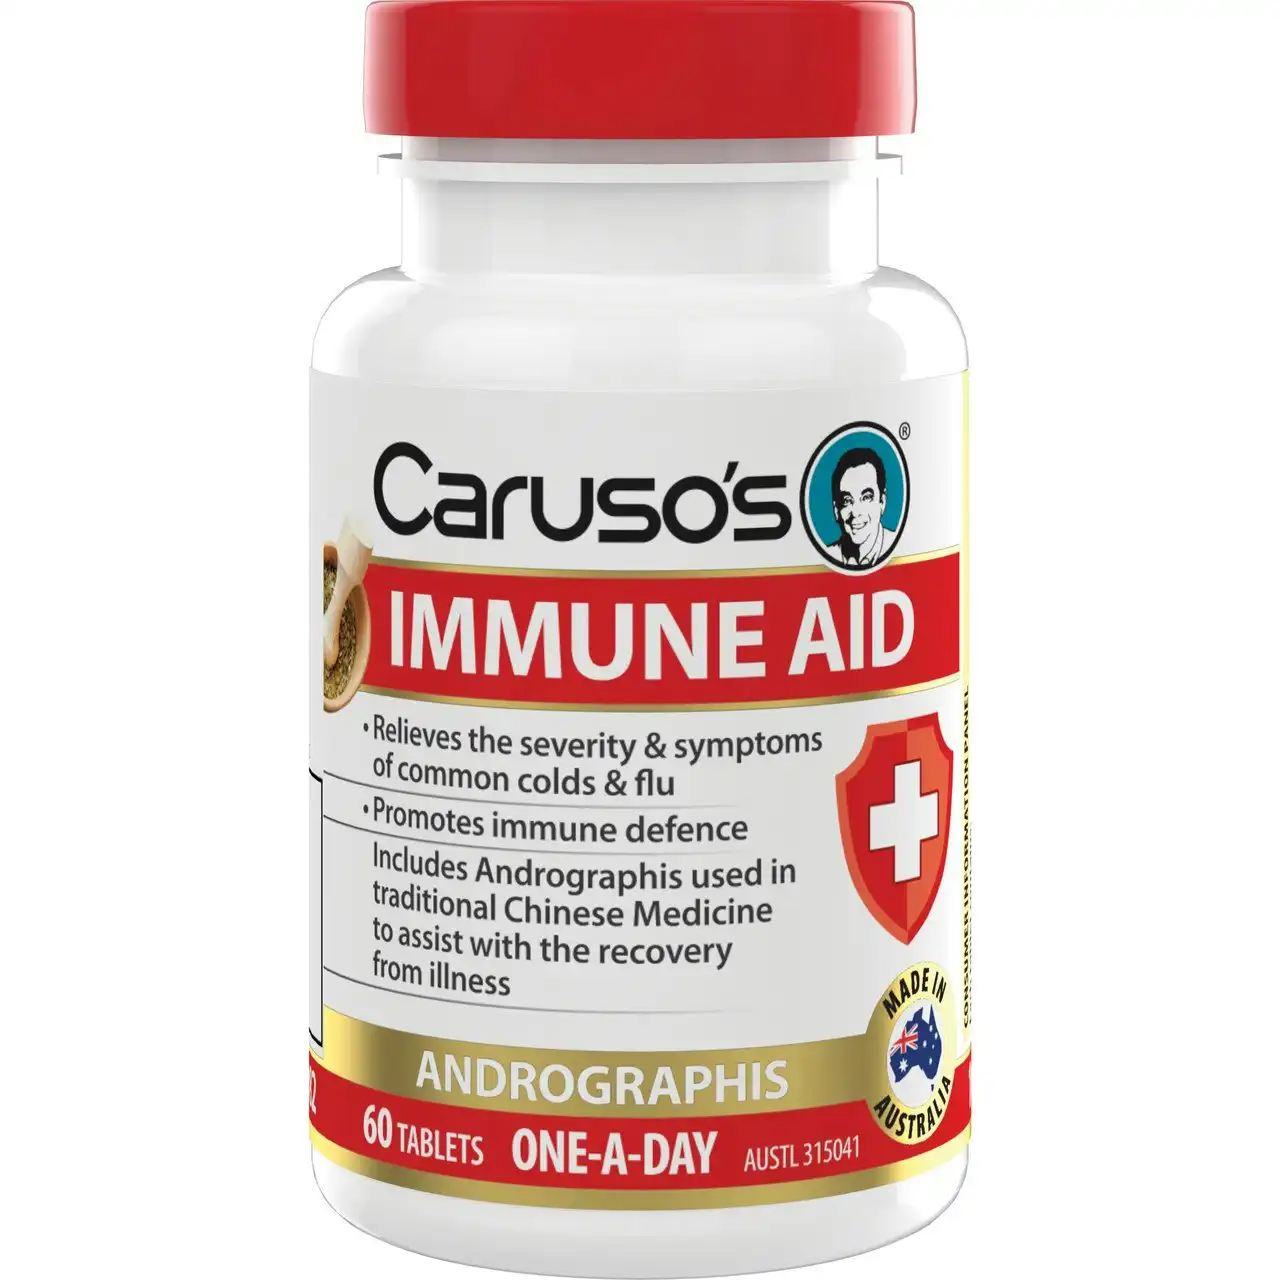 Caruso's Immune Aid